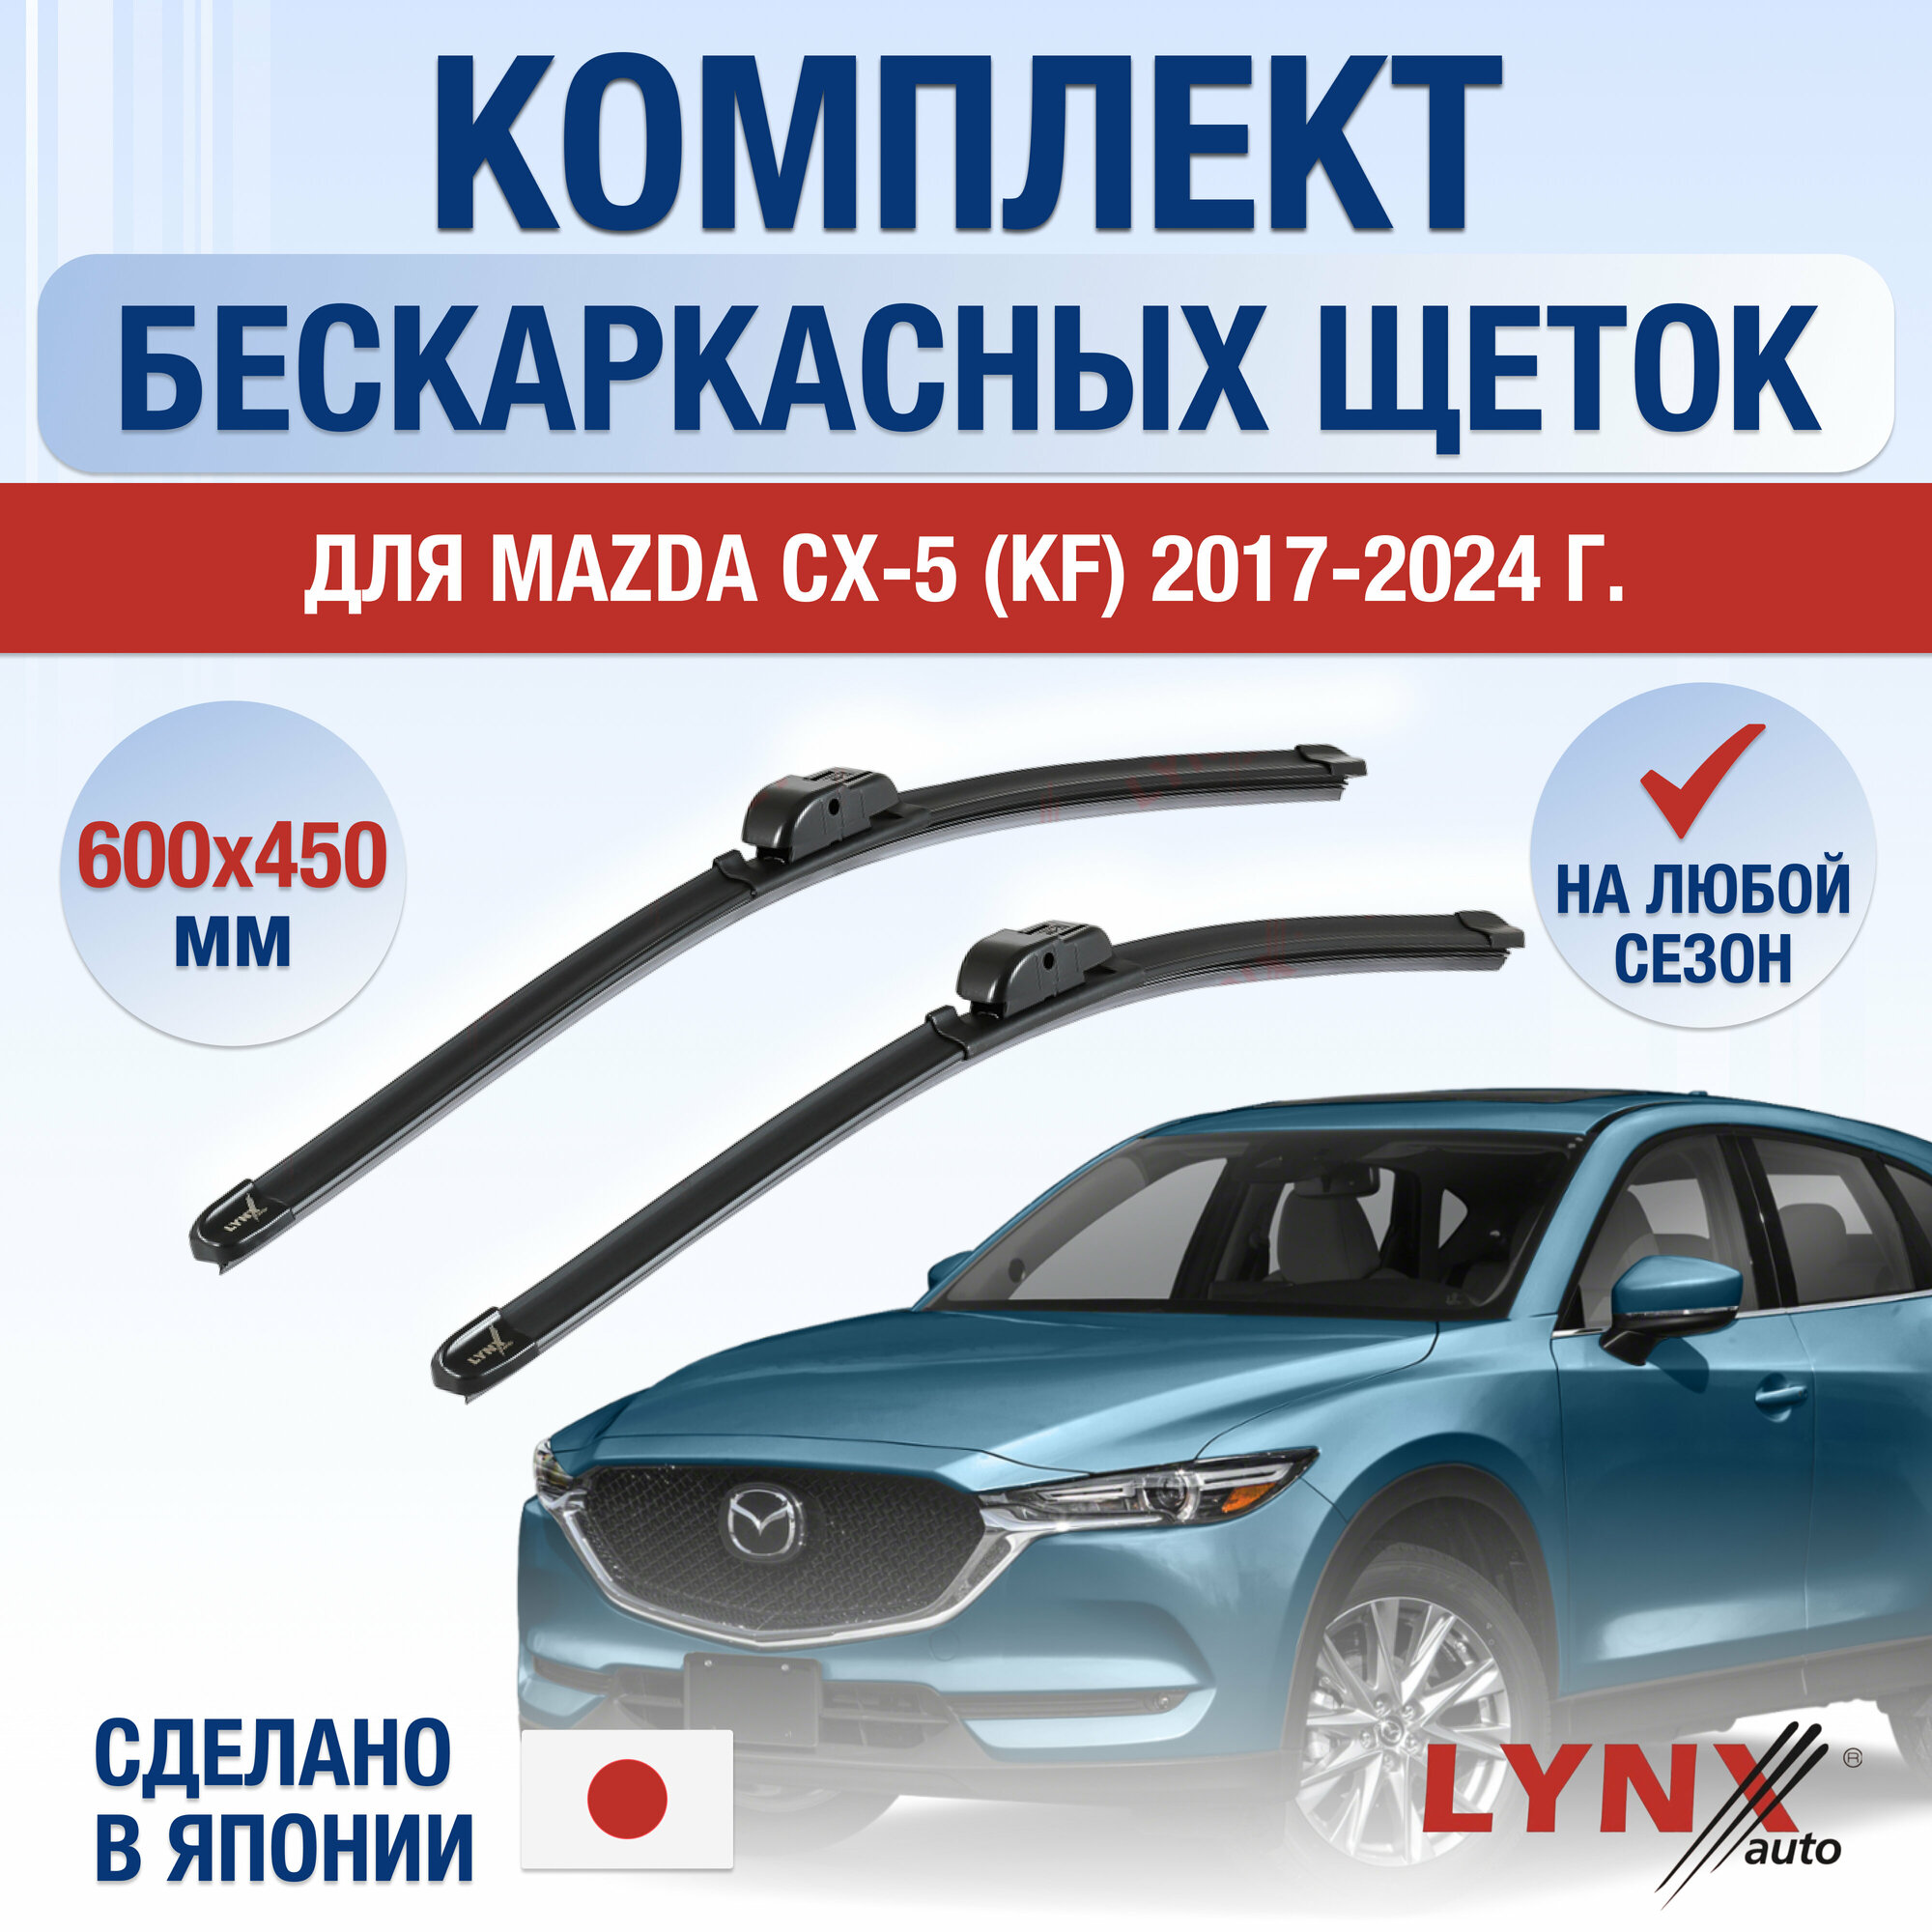 Щетки стеклоочистителя для Mazda CX-5 (2) KF / 2017 2018 2019 2020 2021 2022 2023 2024 / Комплект бескаркасных дворников 600 450 мм Мазда СХ-5